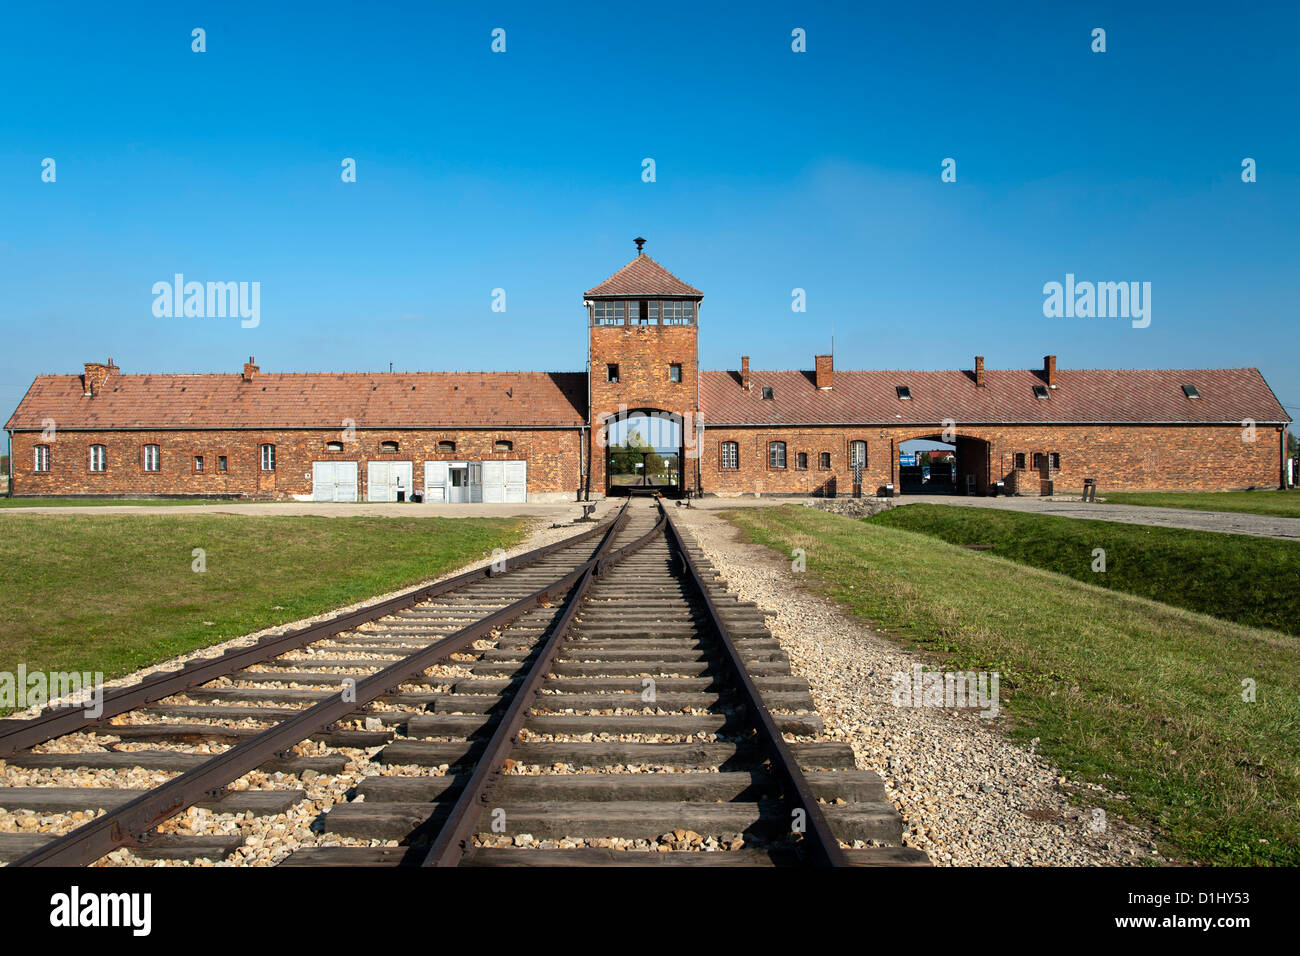 Eingang Haus und Bahnhof Linie des ehemaligen Konzentrationslagers Auschwitz II-Birkenau in Südpolen. Stockfoto